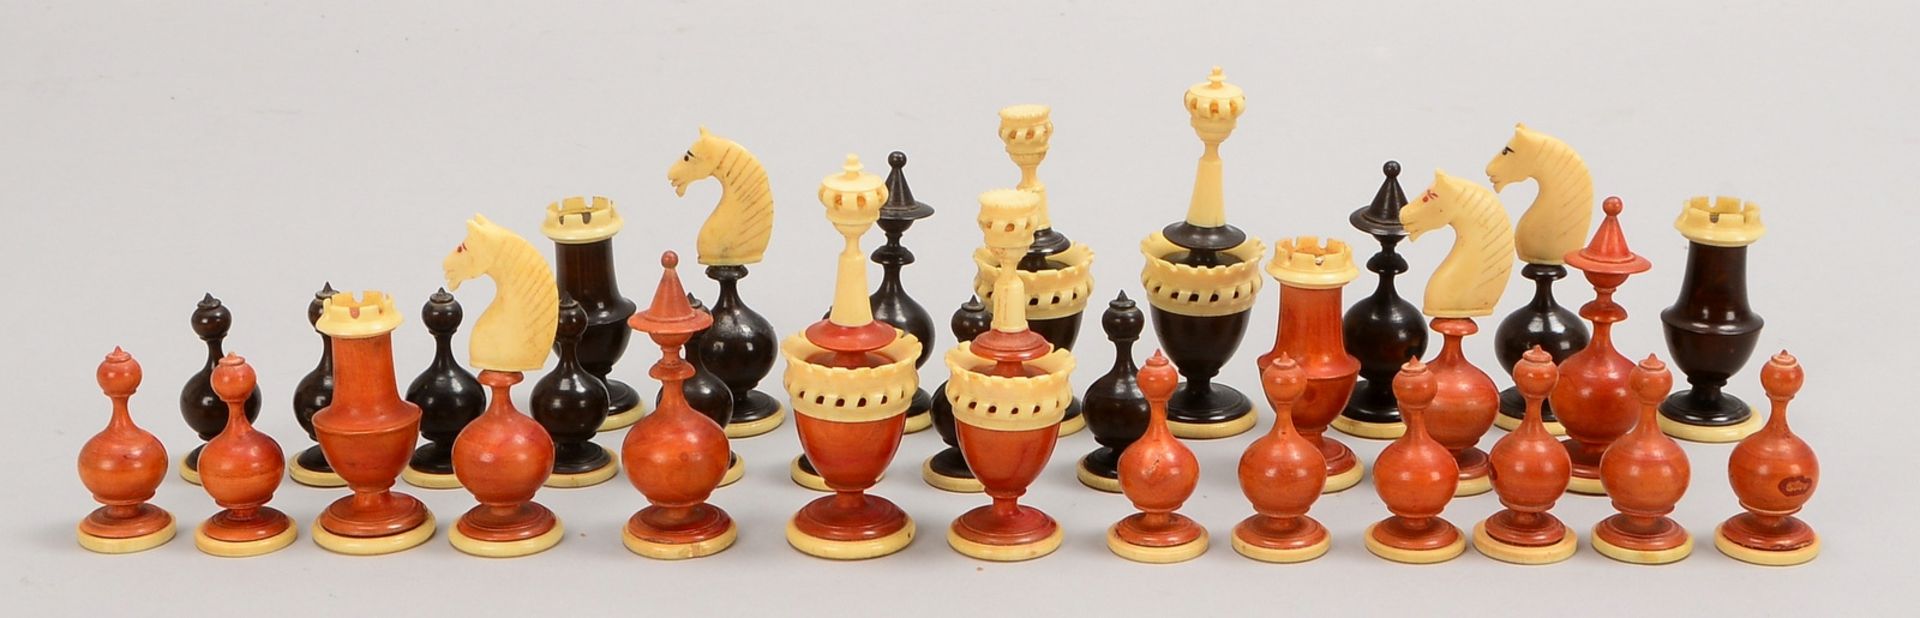 Schach-Spielfiguren, Bein/Holz, kompl., im Karton (einzelner 'Springer' mit Klebstelle)